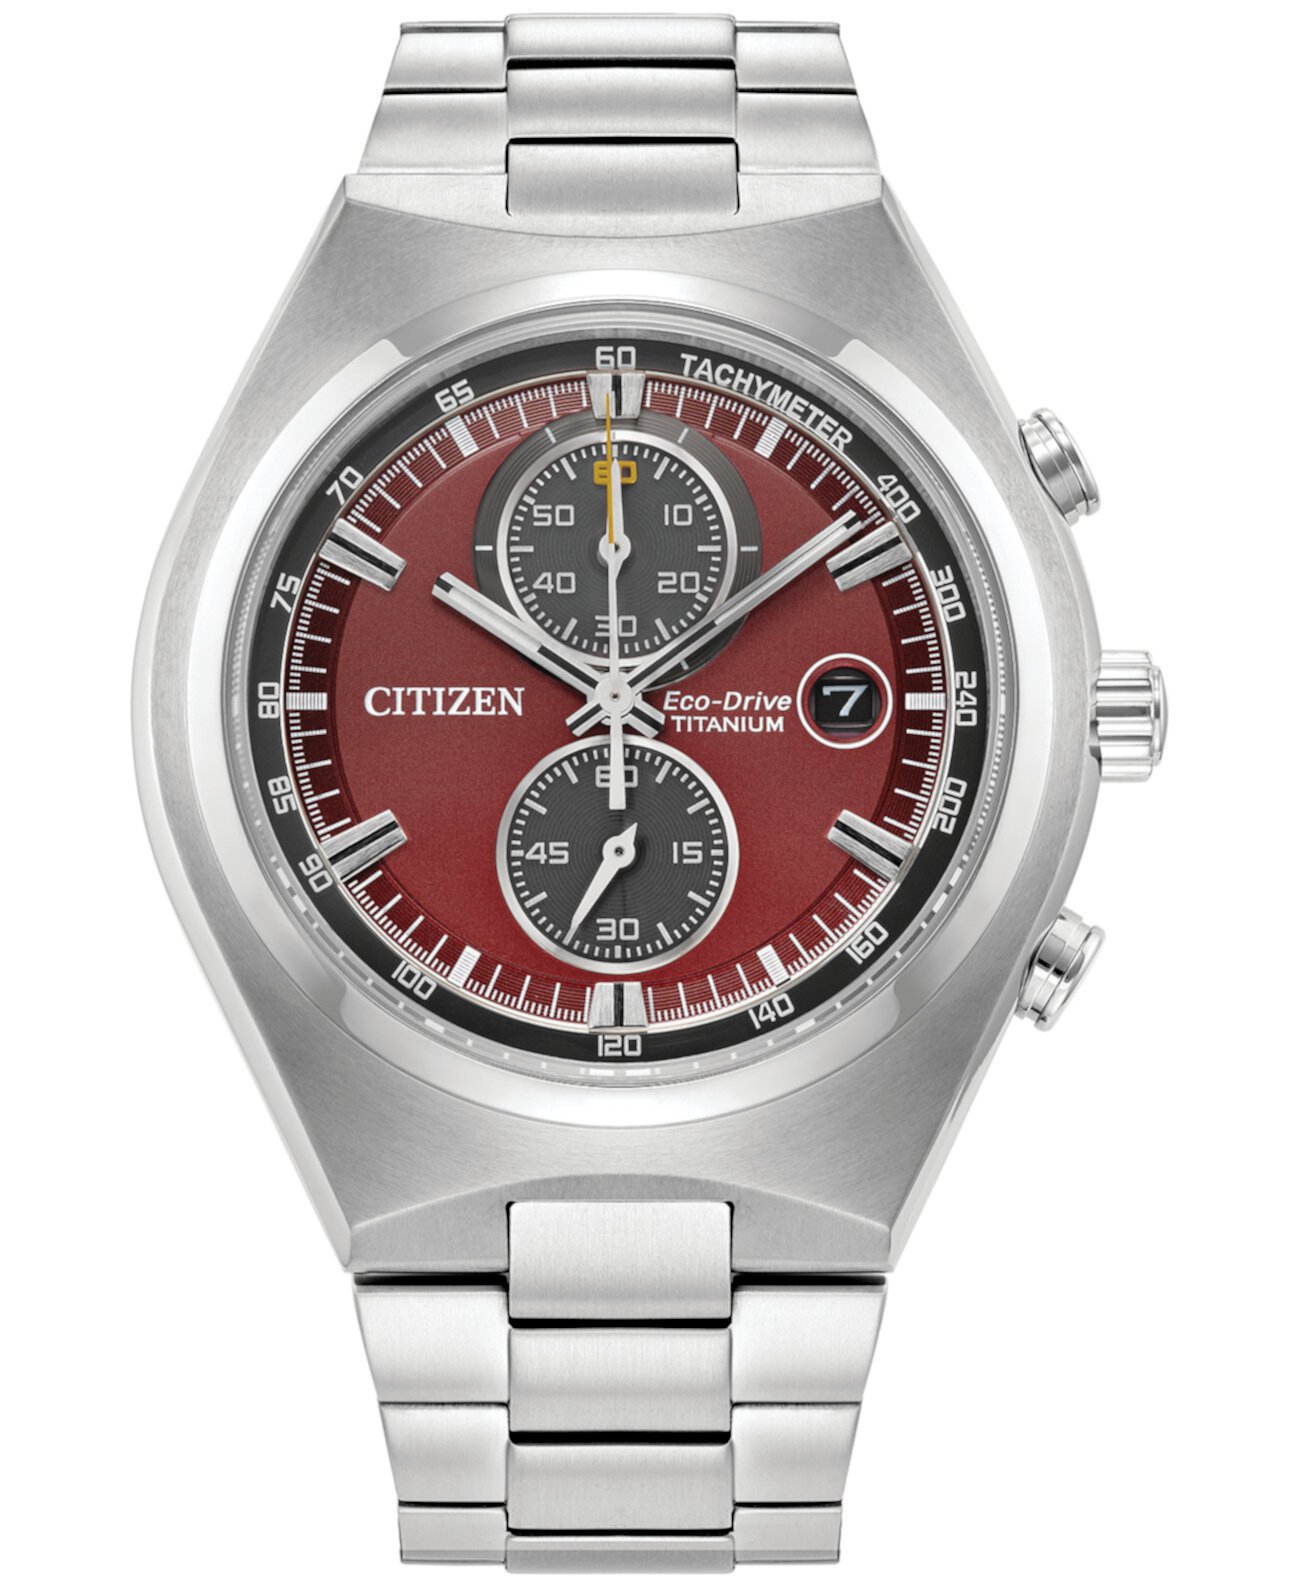 Мужские часы Eco-Drive с хронографом Weekender, серебристый титановый браслет, 43 мм, созданные для Macy's Citizen